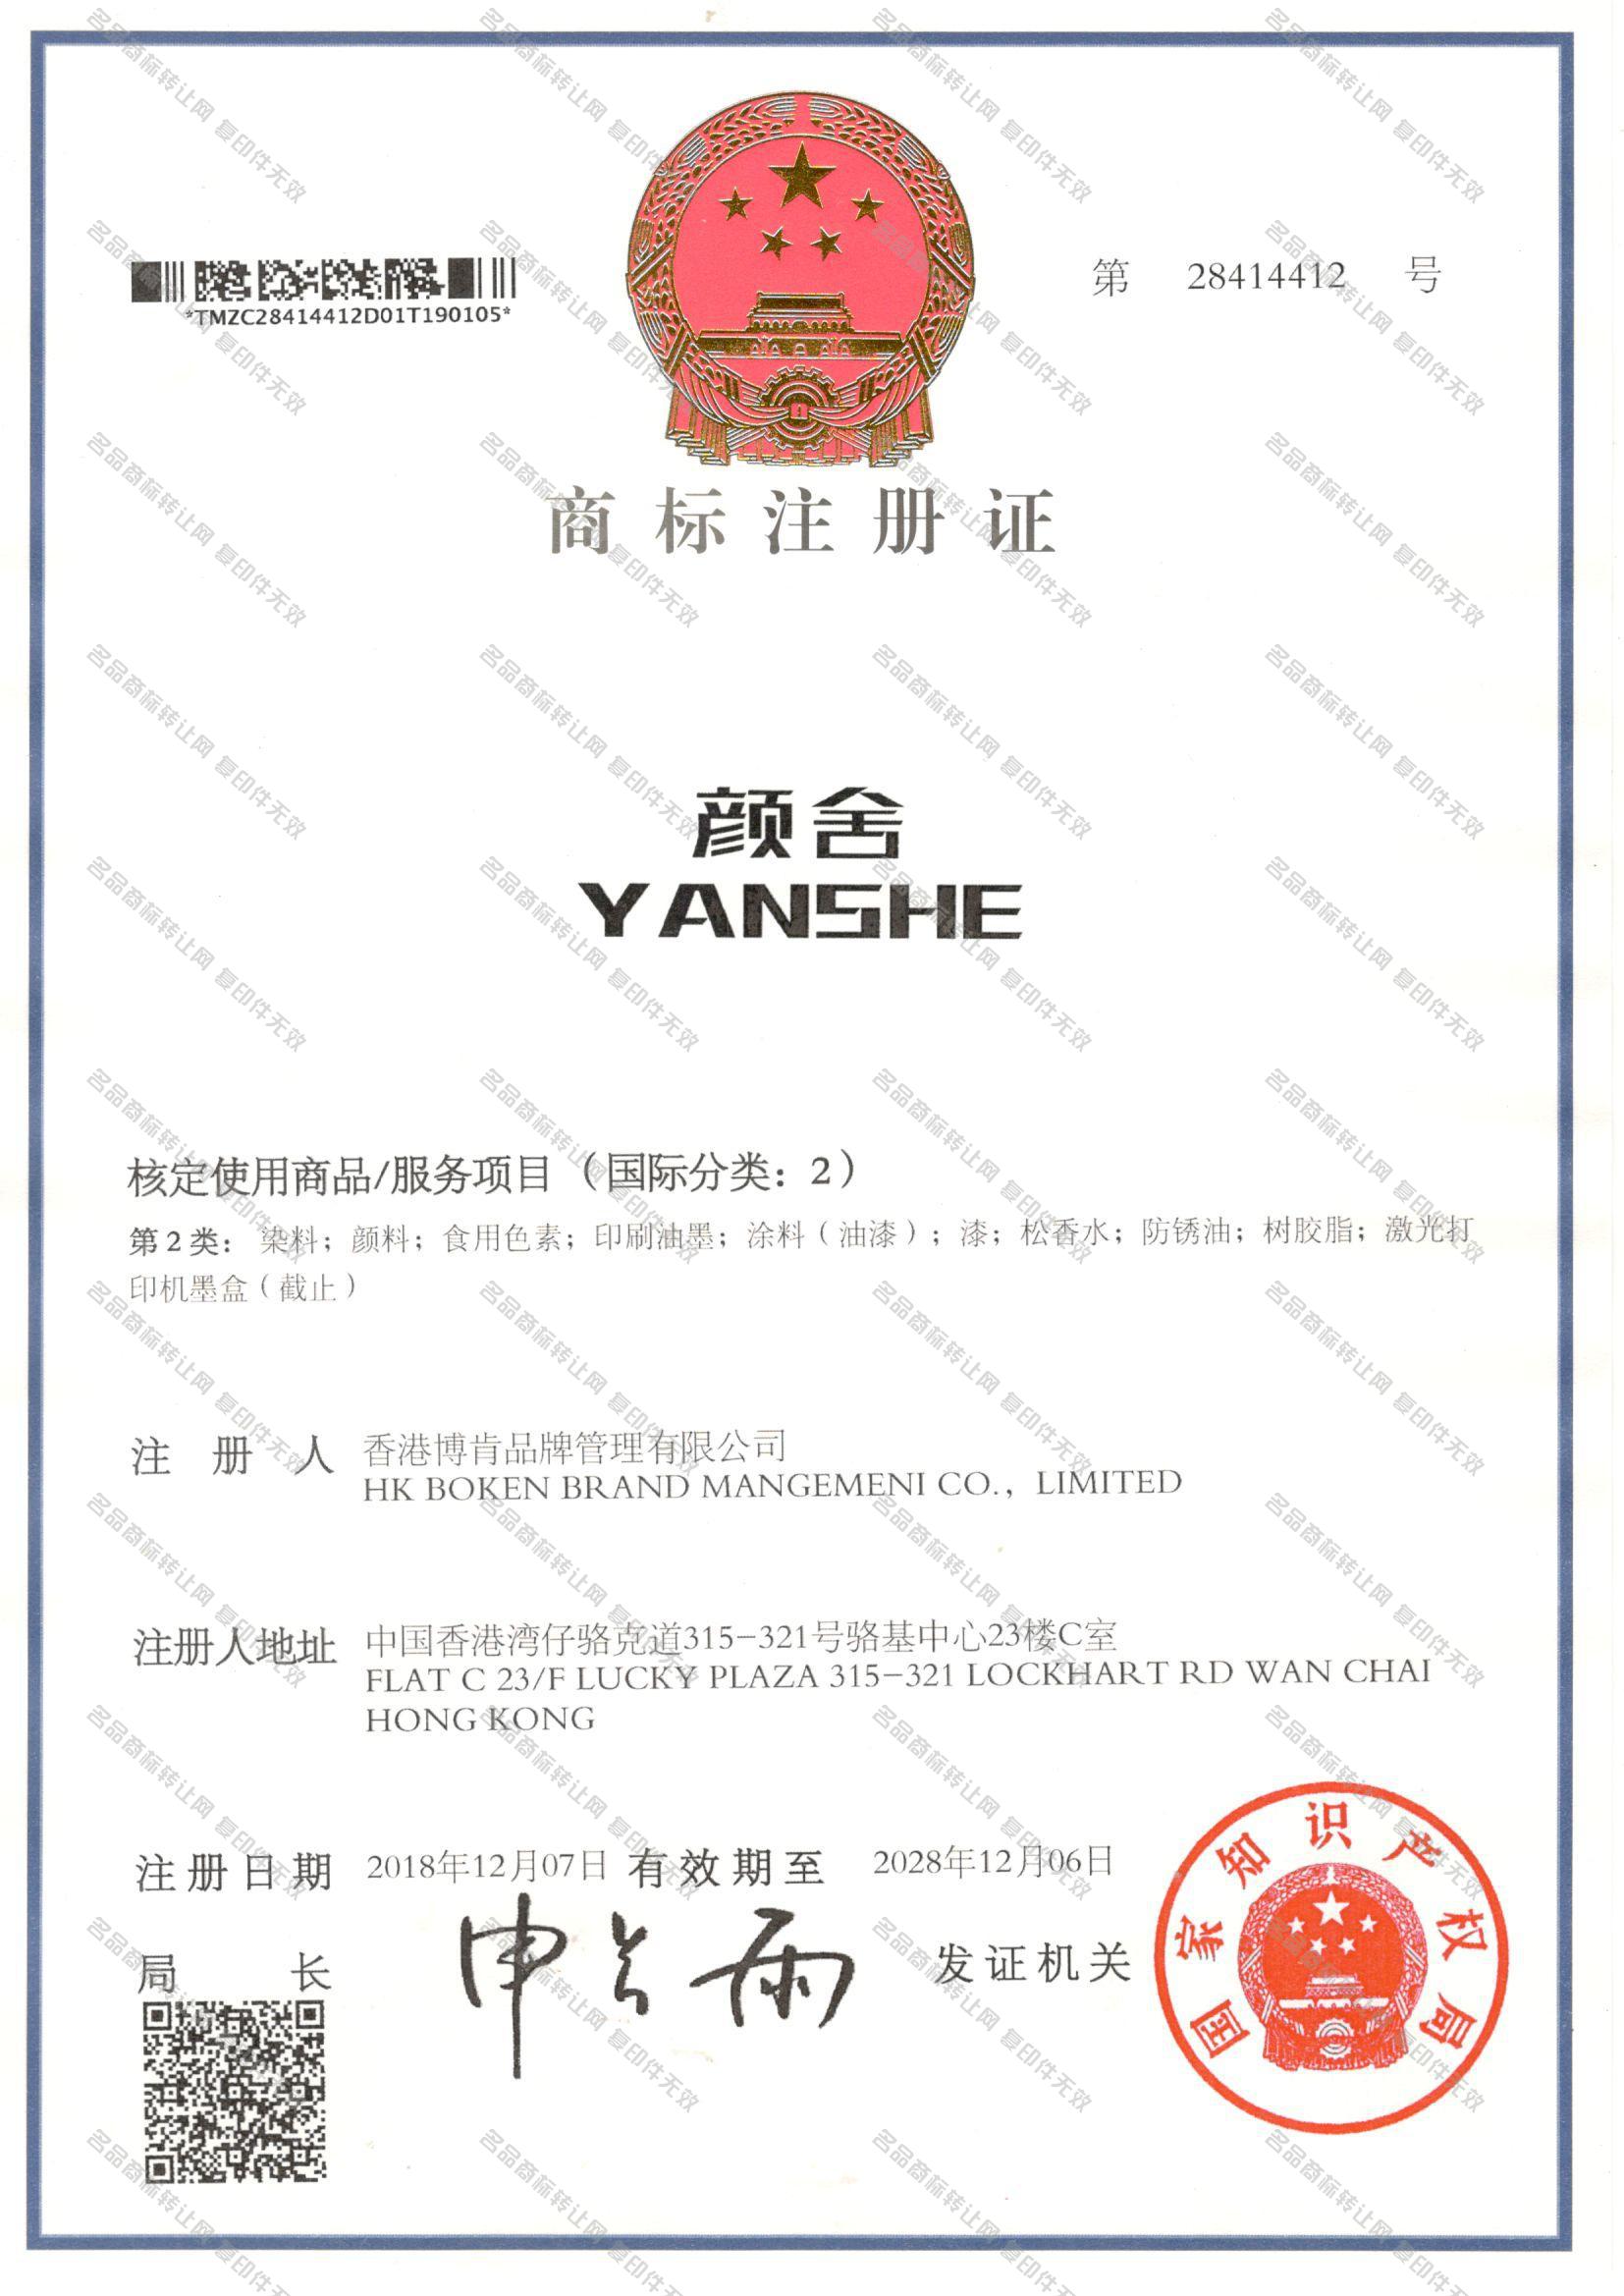 颜舍 YANSHE注册证